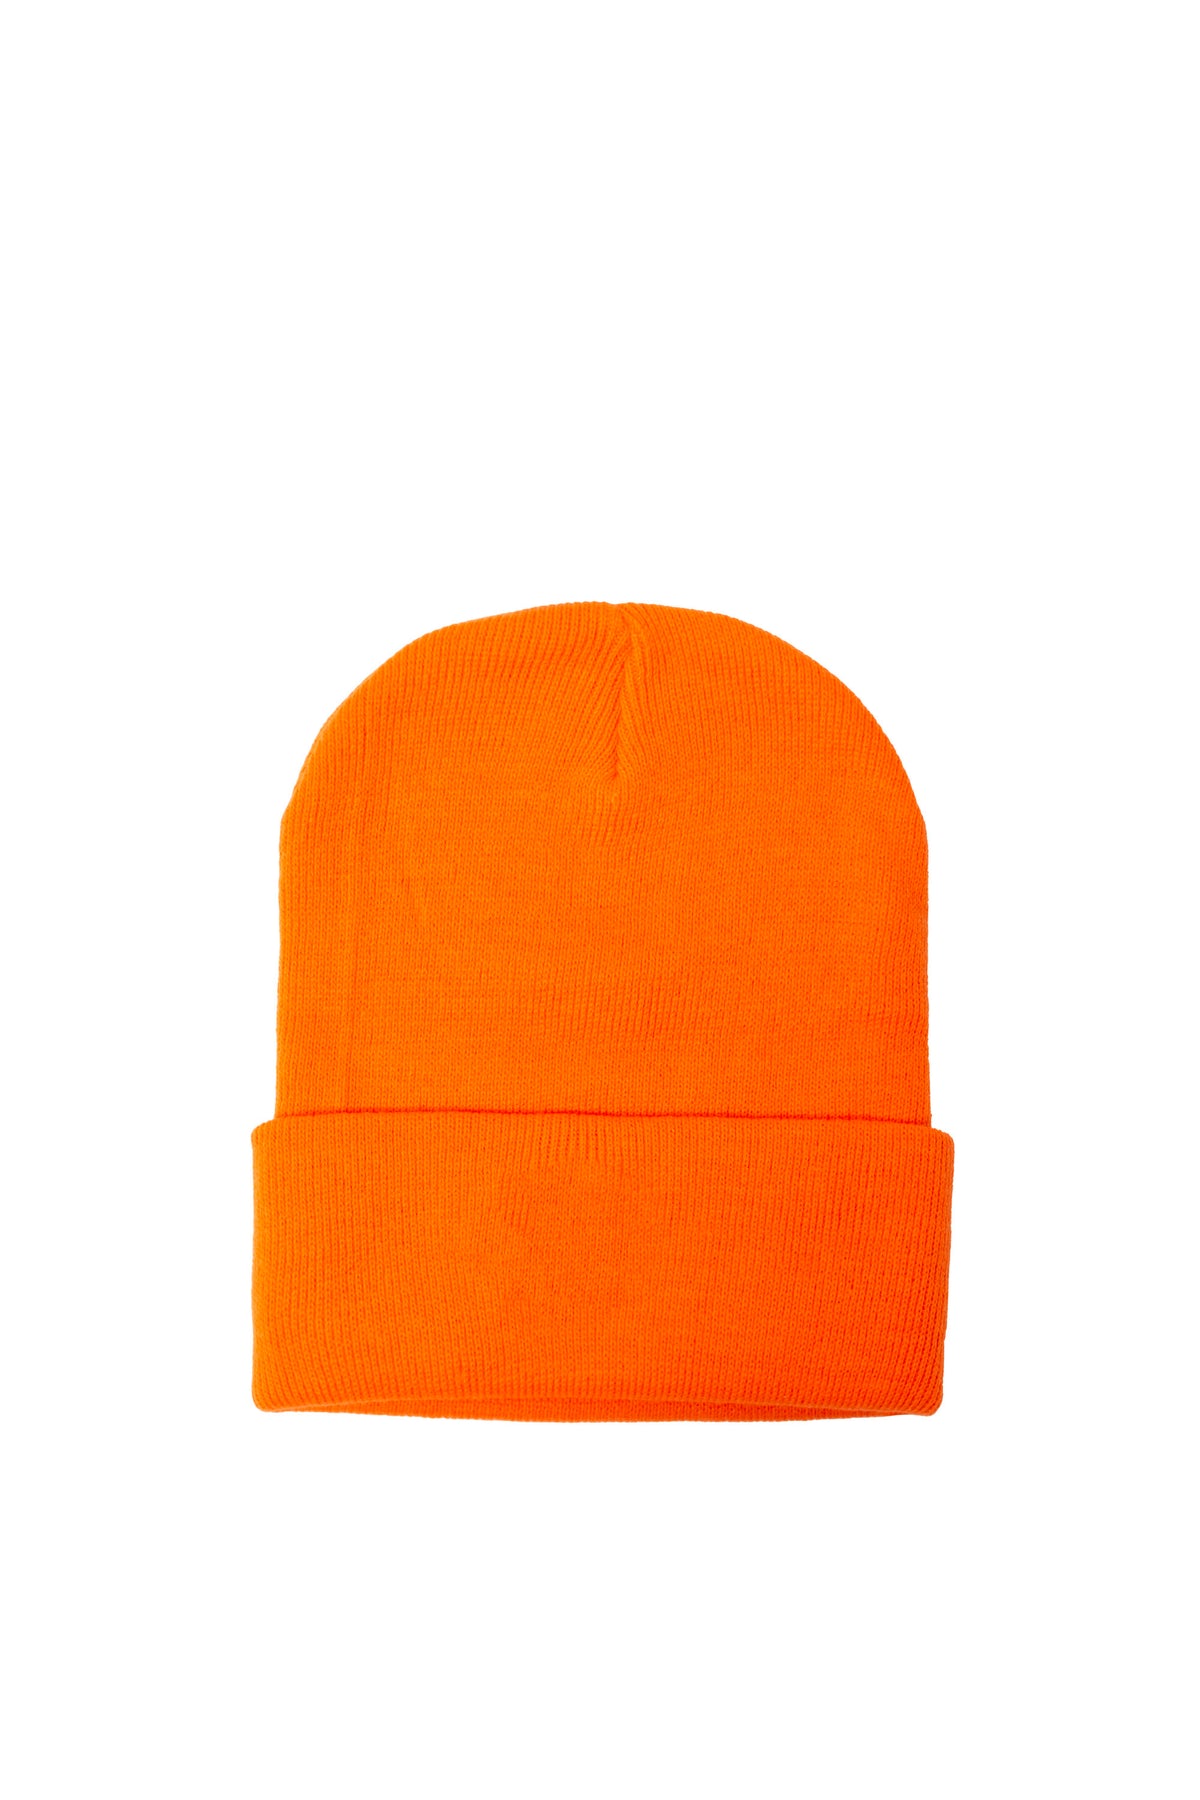 新品《 VETEMENTS 》Logo Beanie / Neon Orange